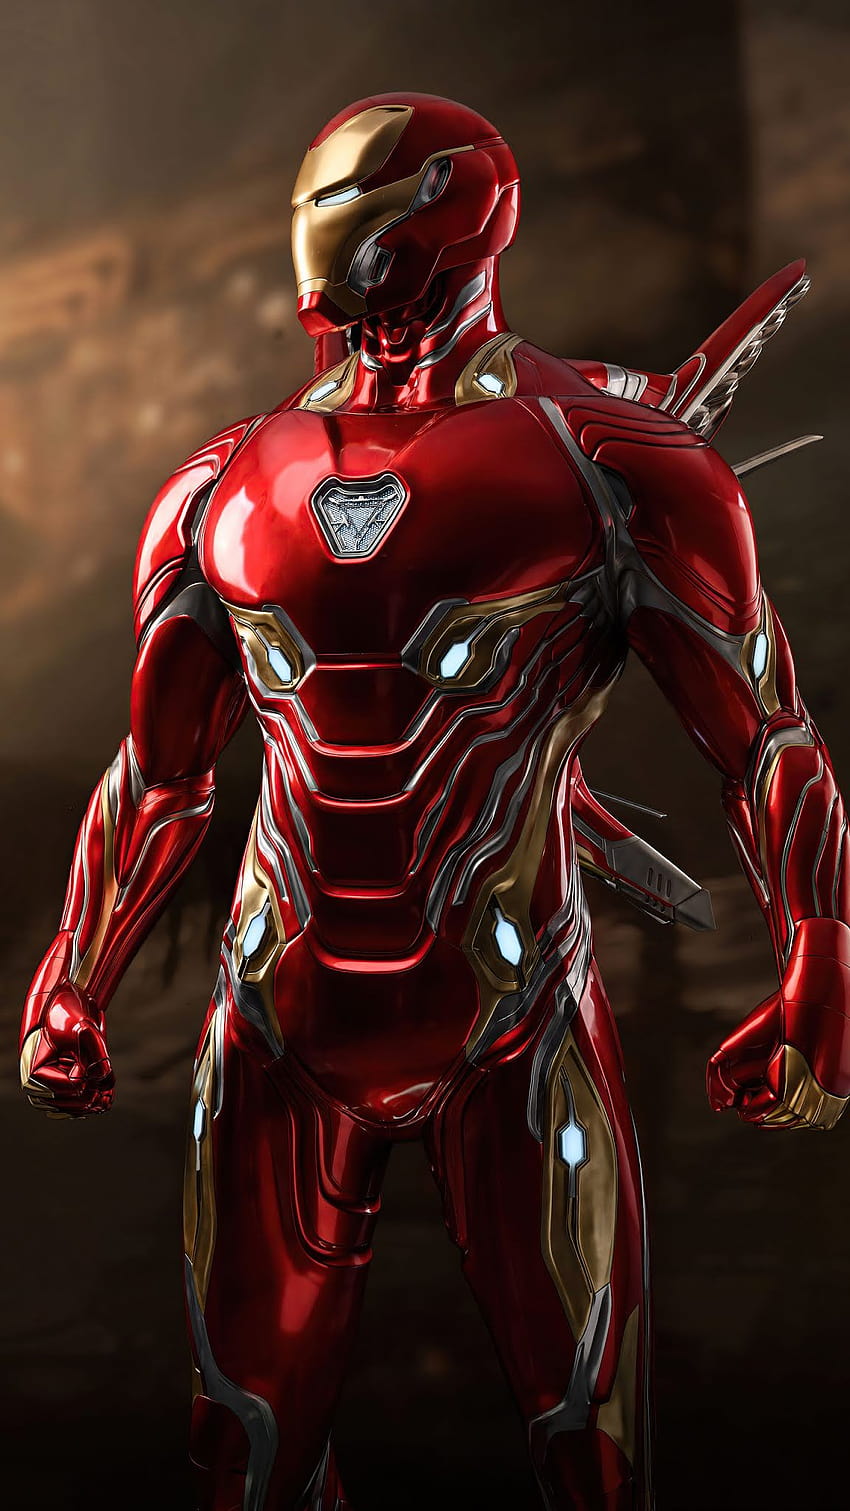 Iron Man 2020 seluler, ponsel layar penuh iron man wallpaper ponsel HD